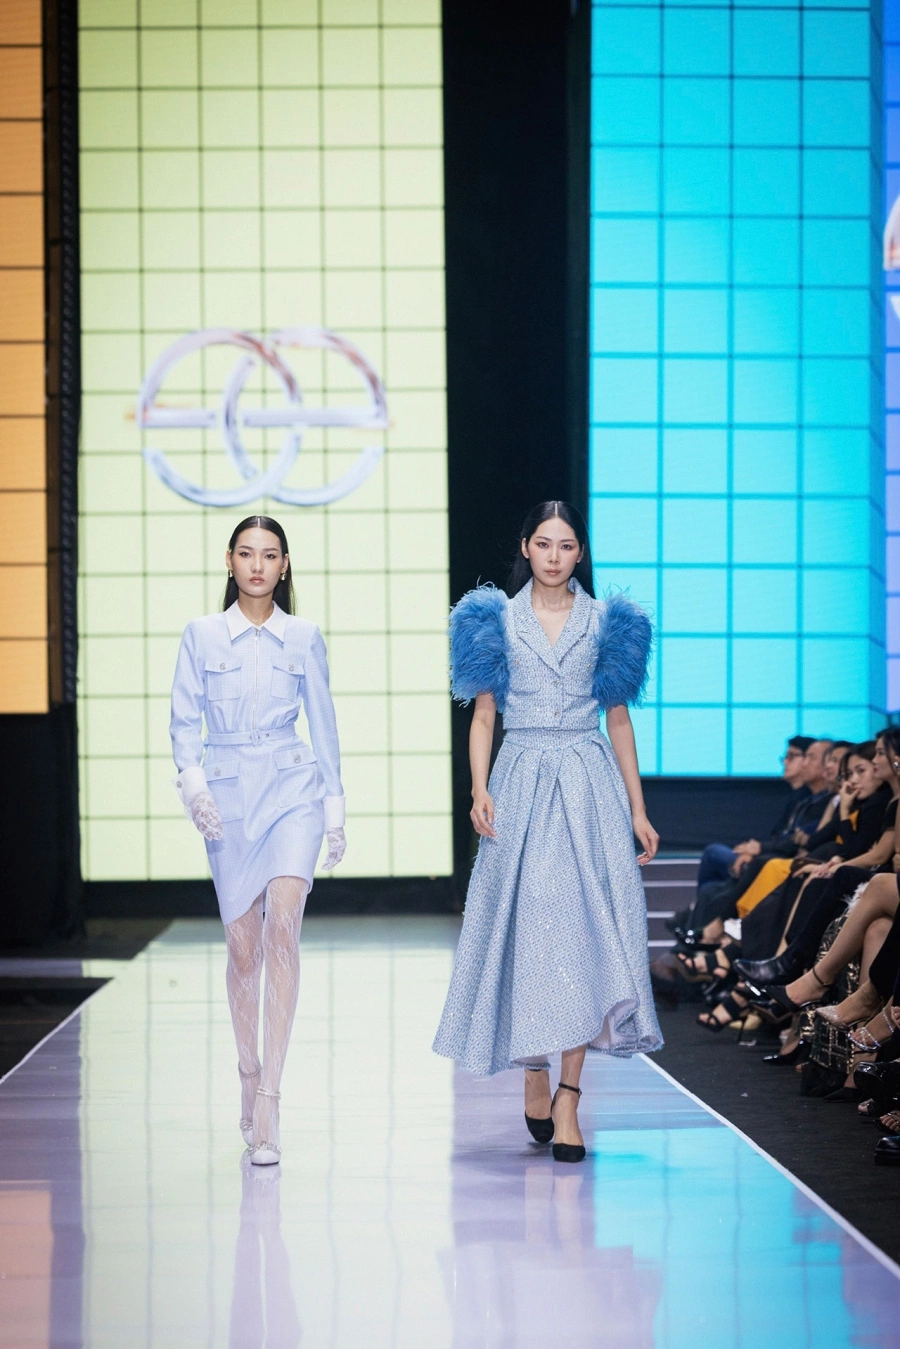 Elise mở đại tiệc thời trang với những mẫu thiết kế độc quyền, mở màn xu hướng Thu - Đông 2023